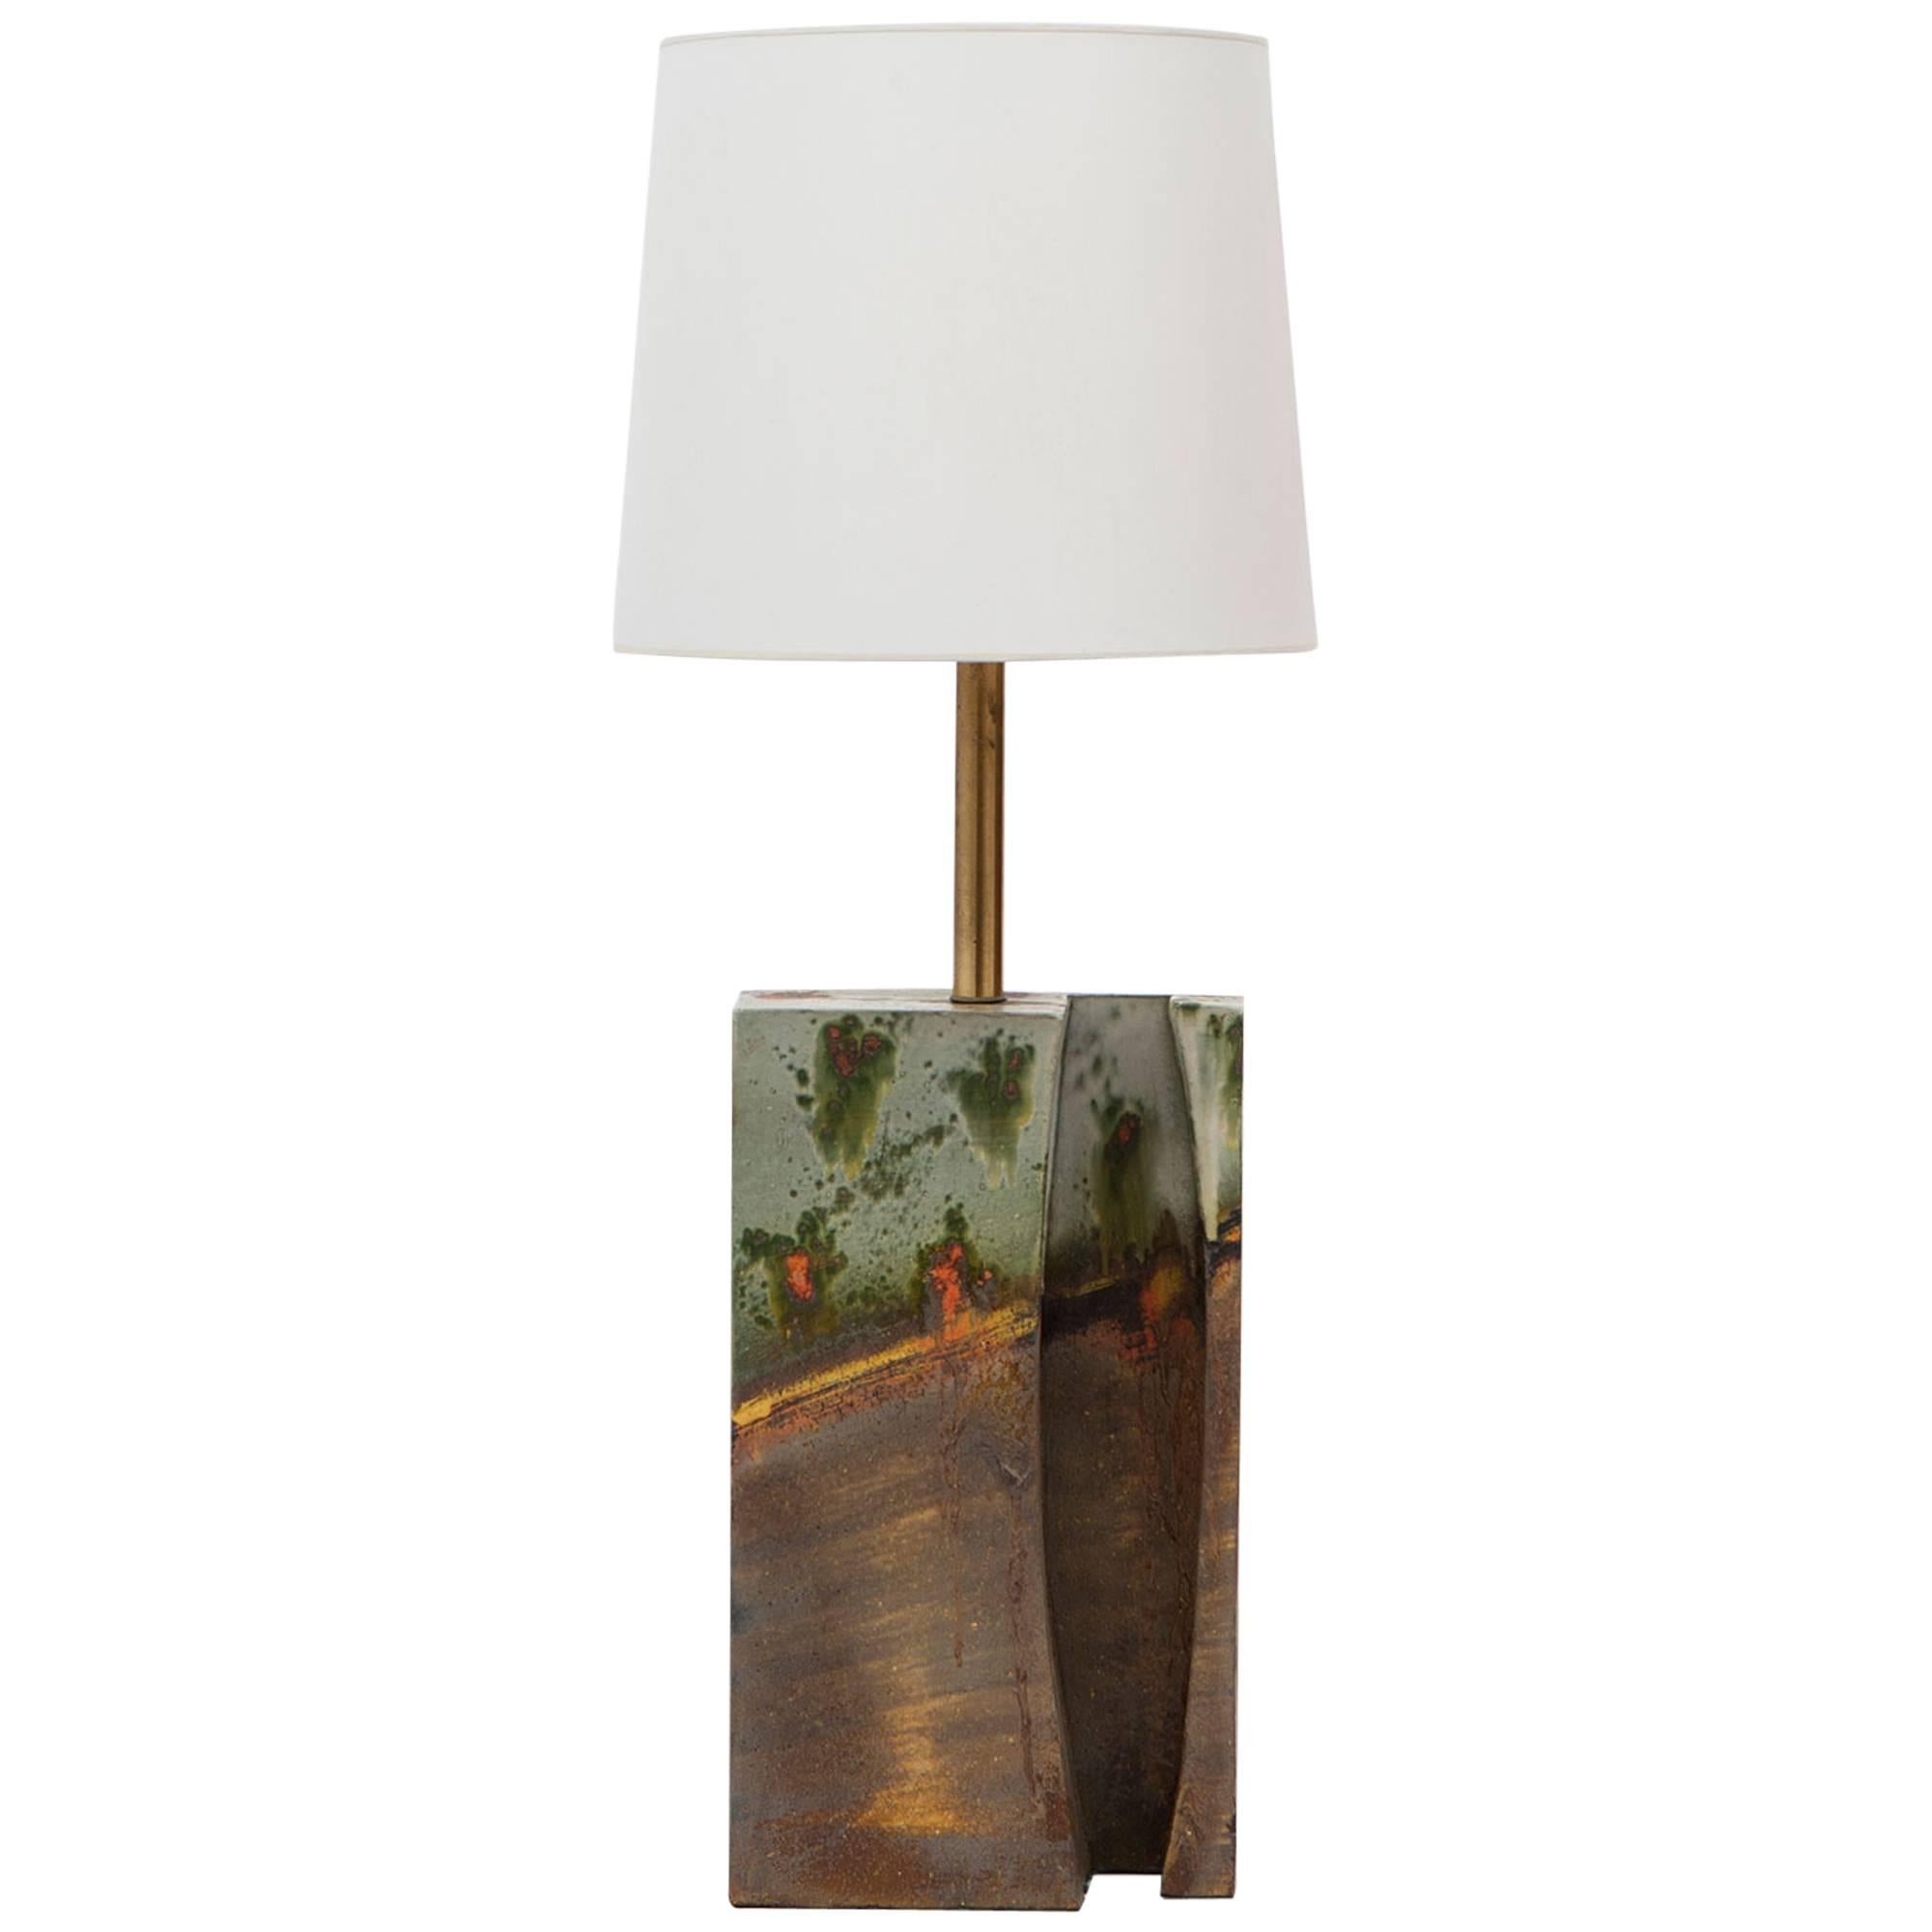 Marcello Fantoni Ceramic Table Lamp